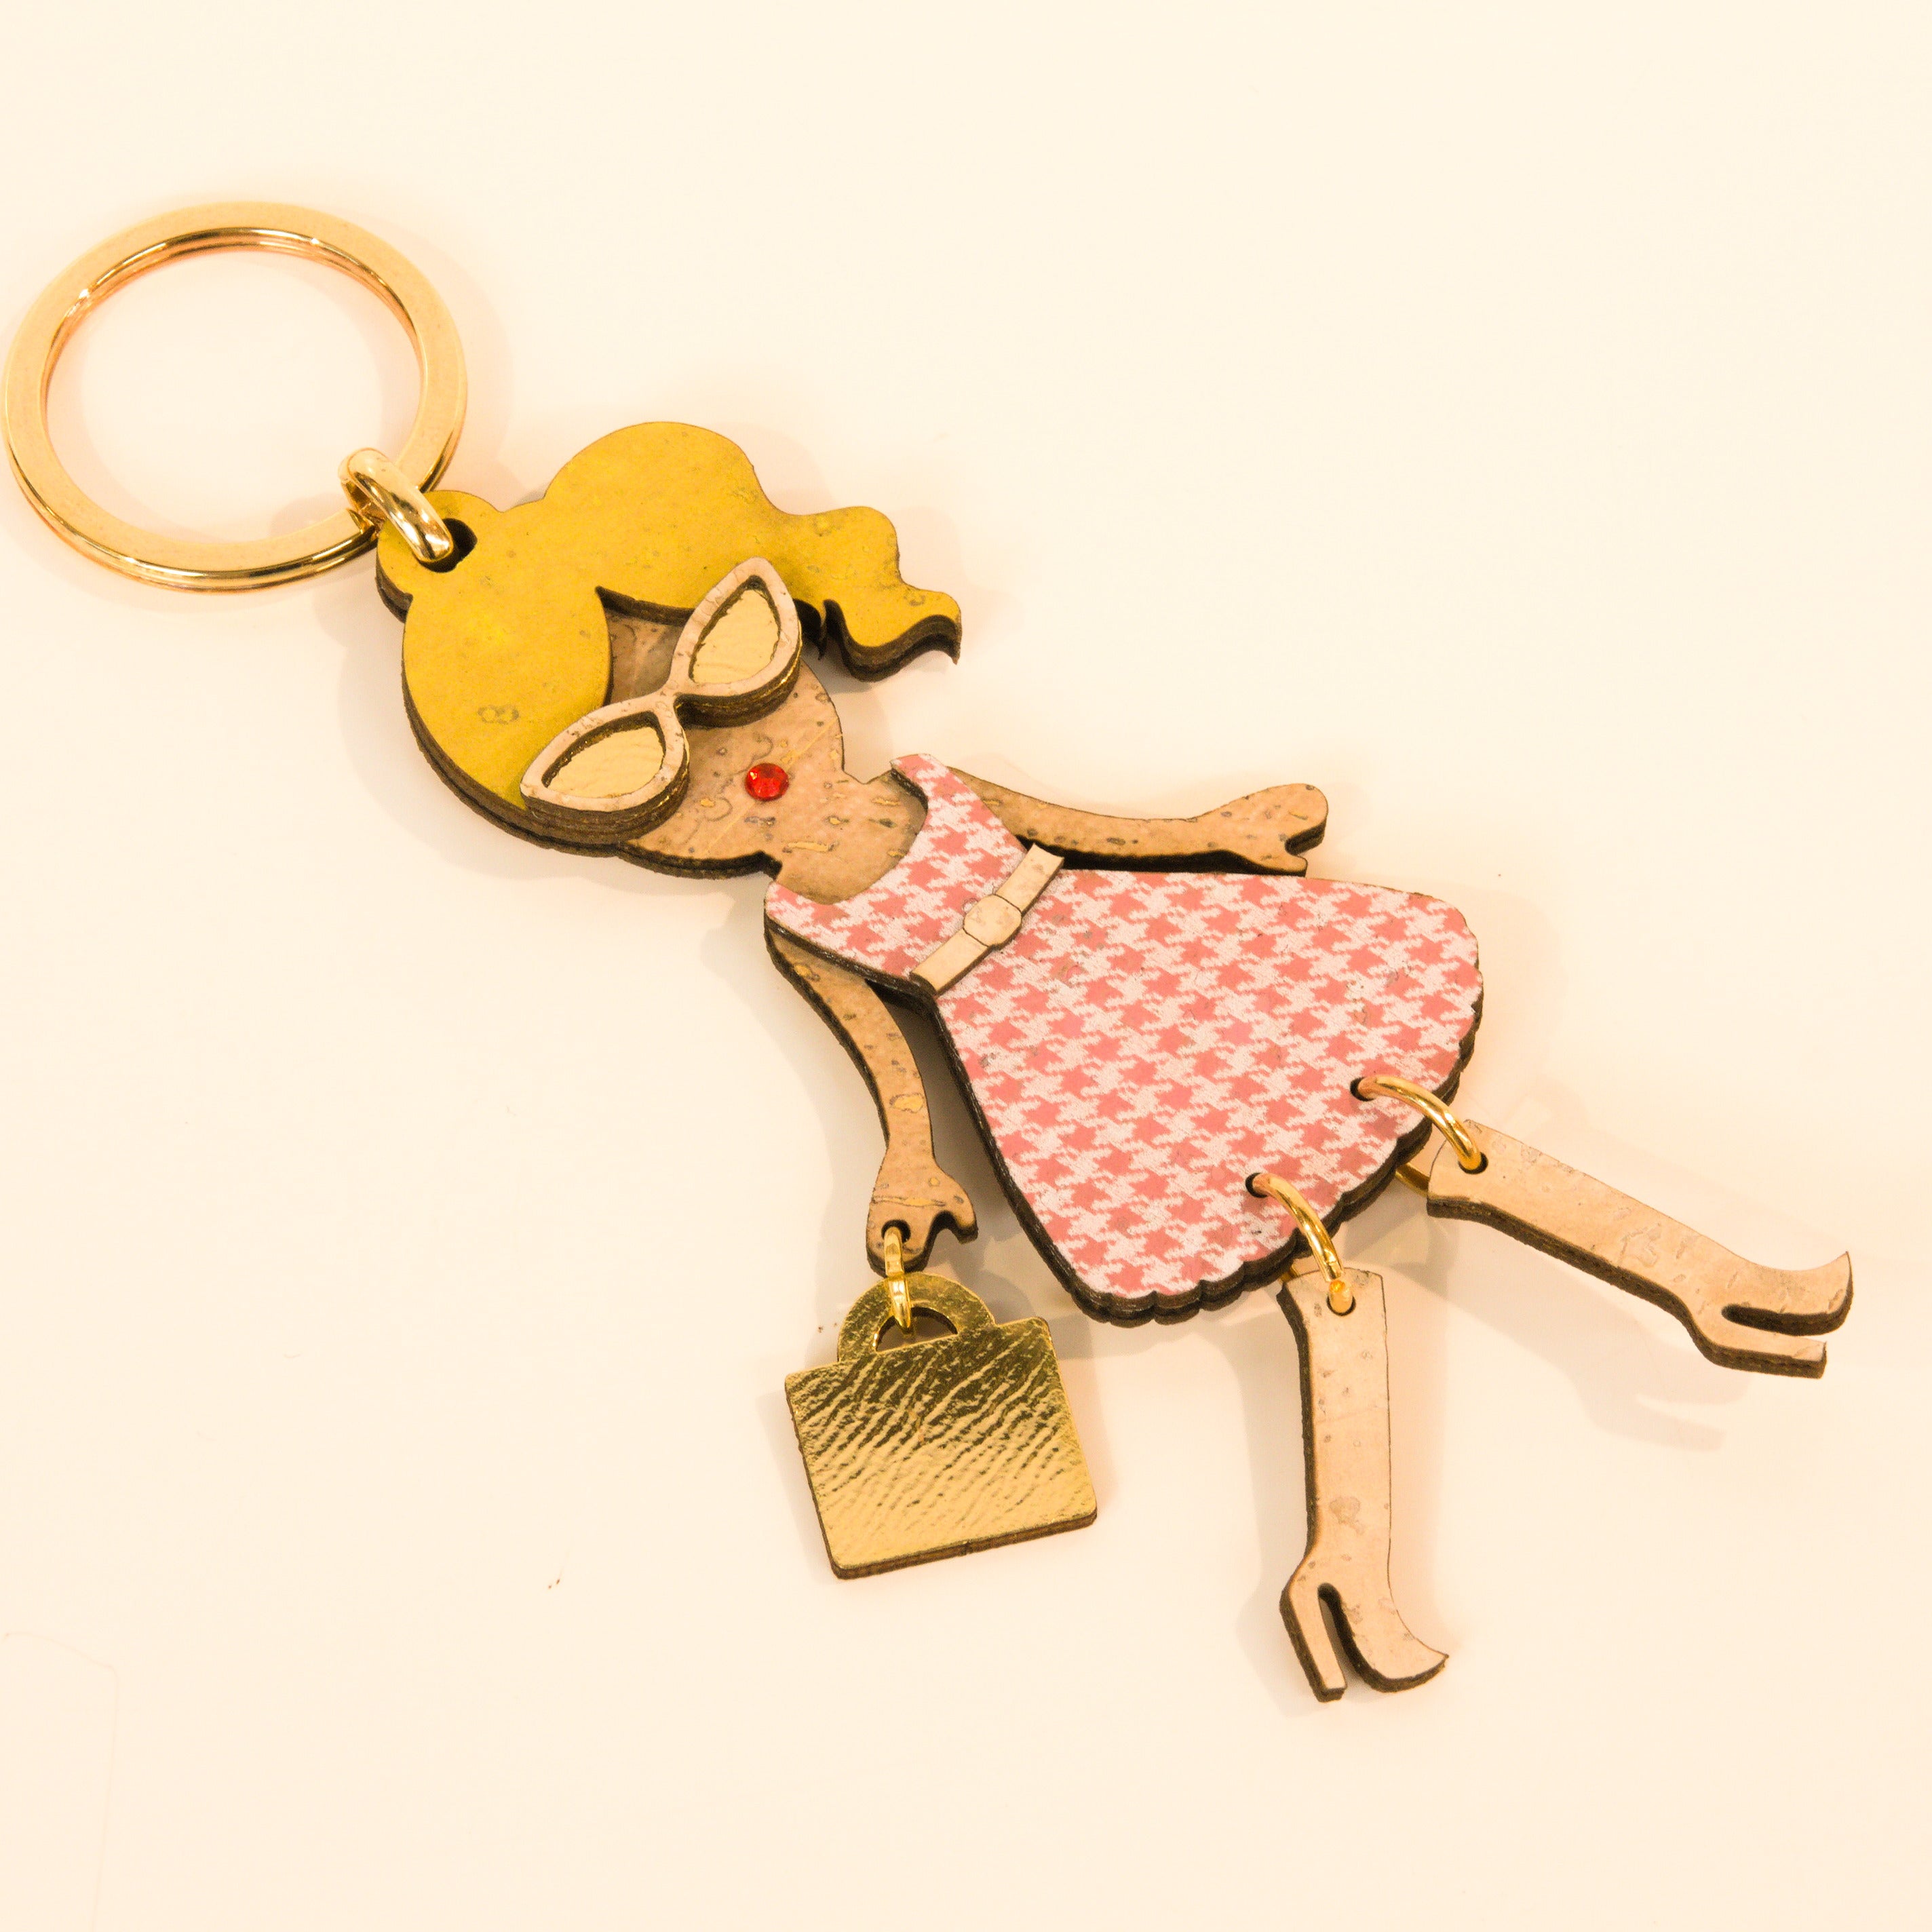 Kork Schlüsselanhänger * peppige Figuren * Anhänger für Taschen * Geschenk für Frauen * handmade in Portugal * Marke Artipel